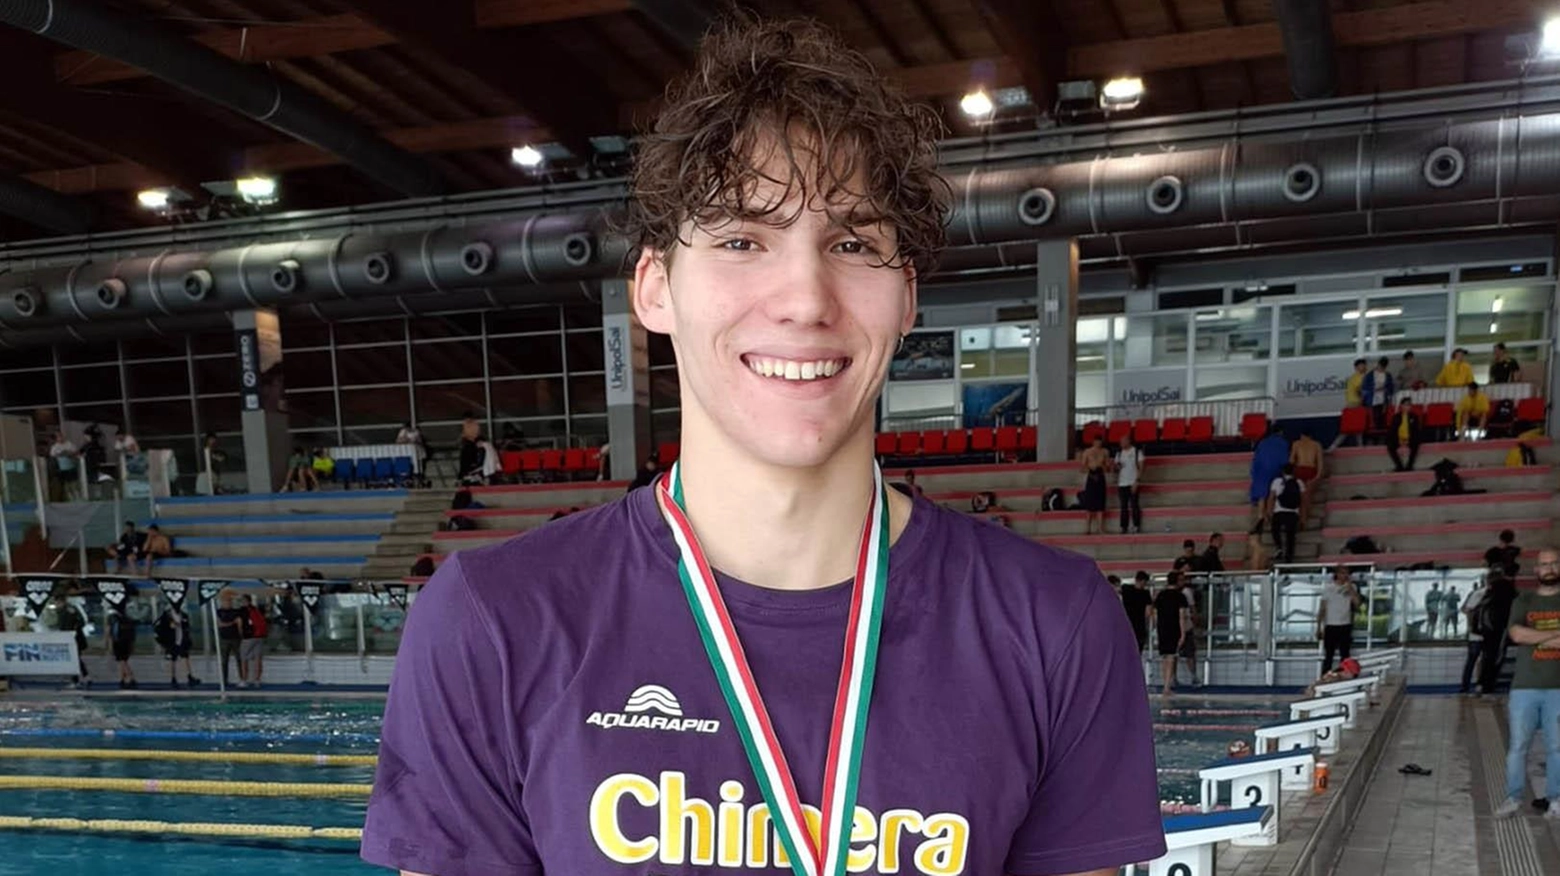 Gabriele Gambini della Chimera Nuoto trionfa ai Criteria nazionali giovanili con due medaglie d'oro nei 200 e 400 stile libero, confermando il suo talento e la preparazione della squadra aretina.